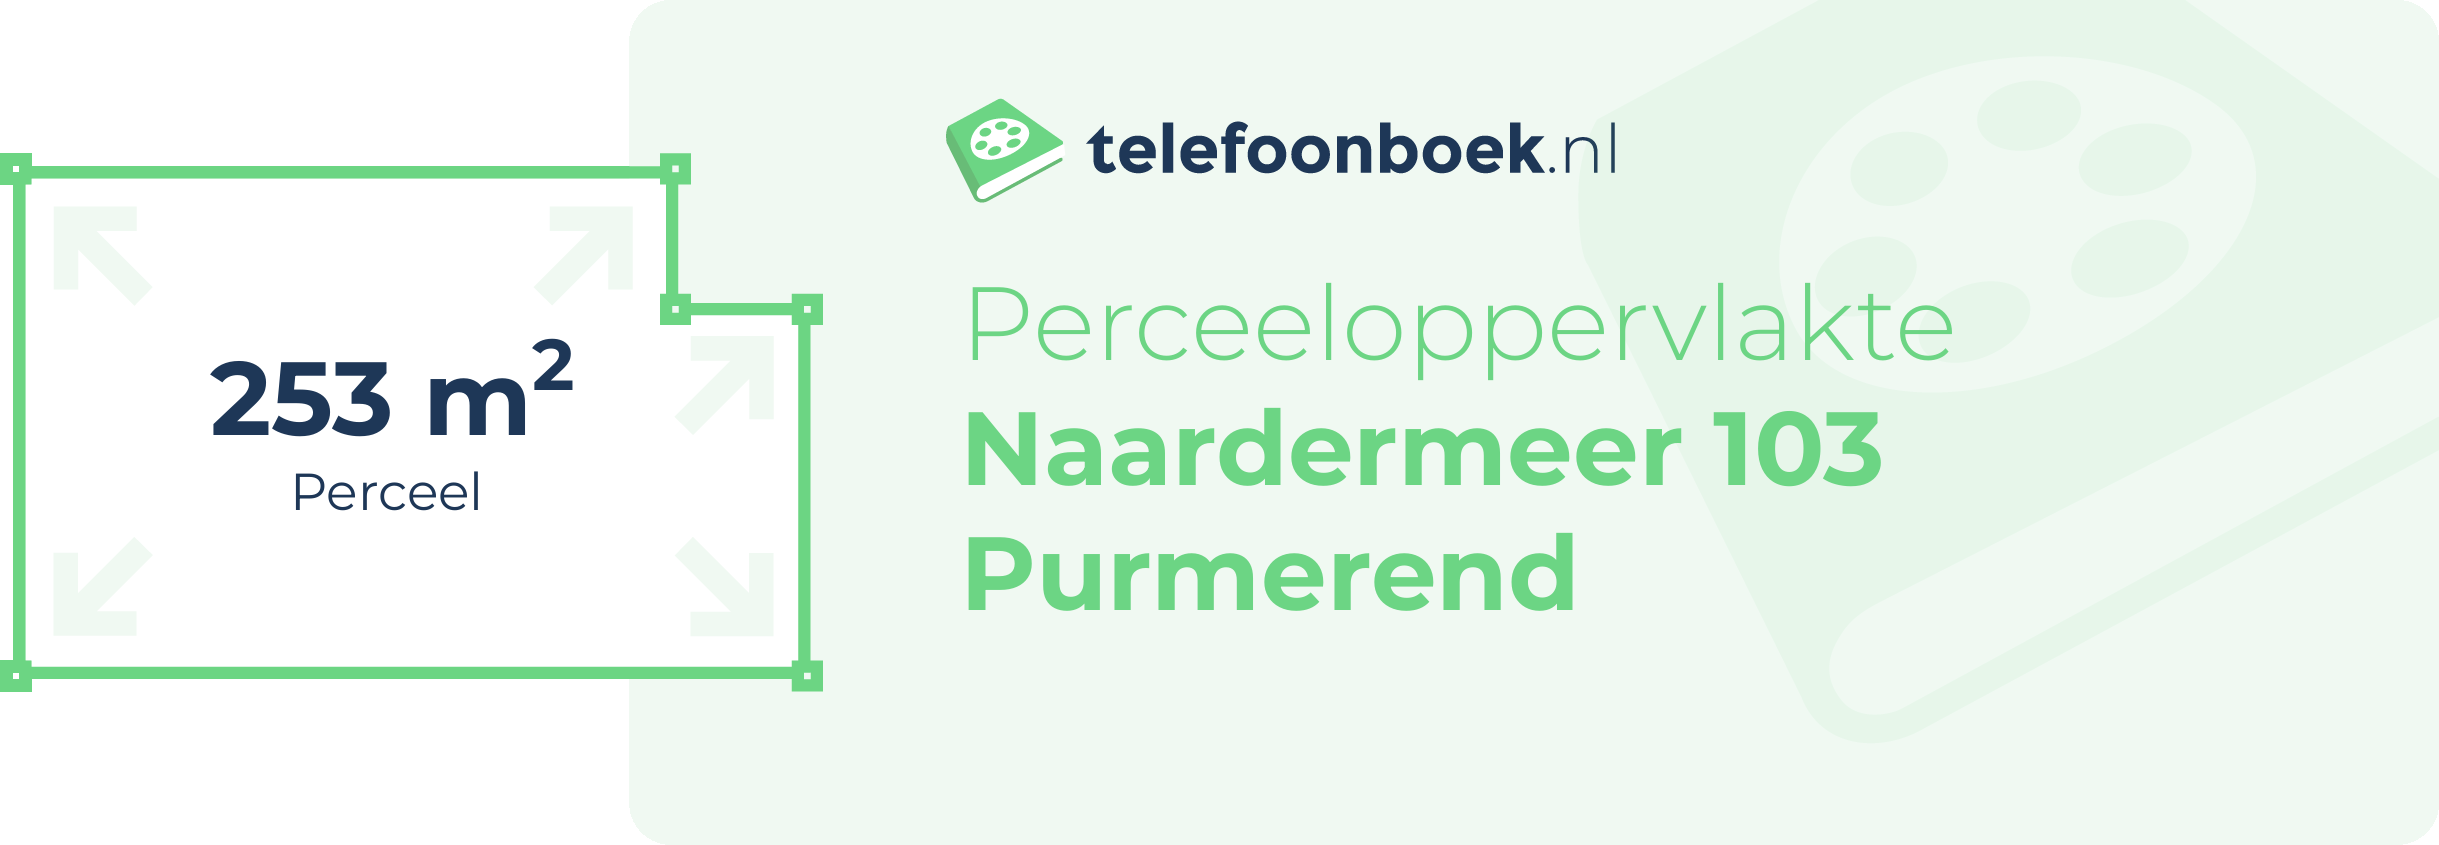 Perceeloppervlakte Naardermeer 103 Purmerend